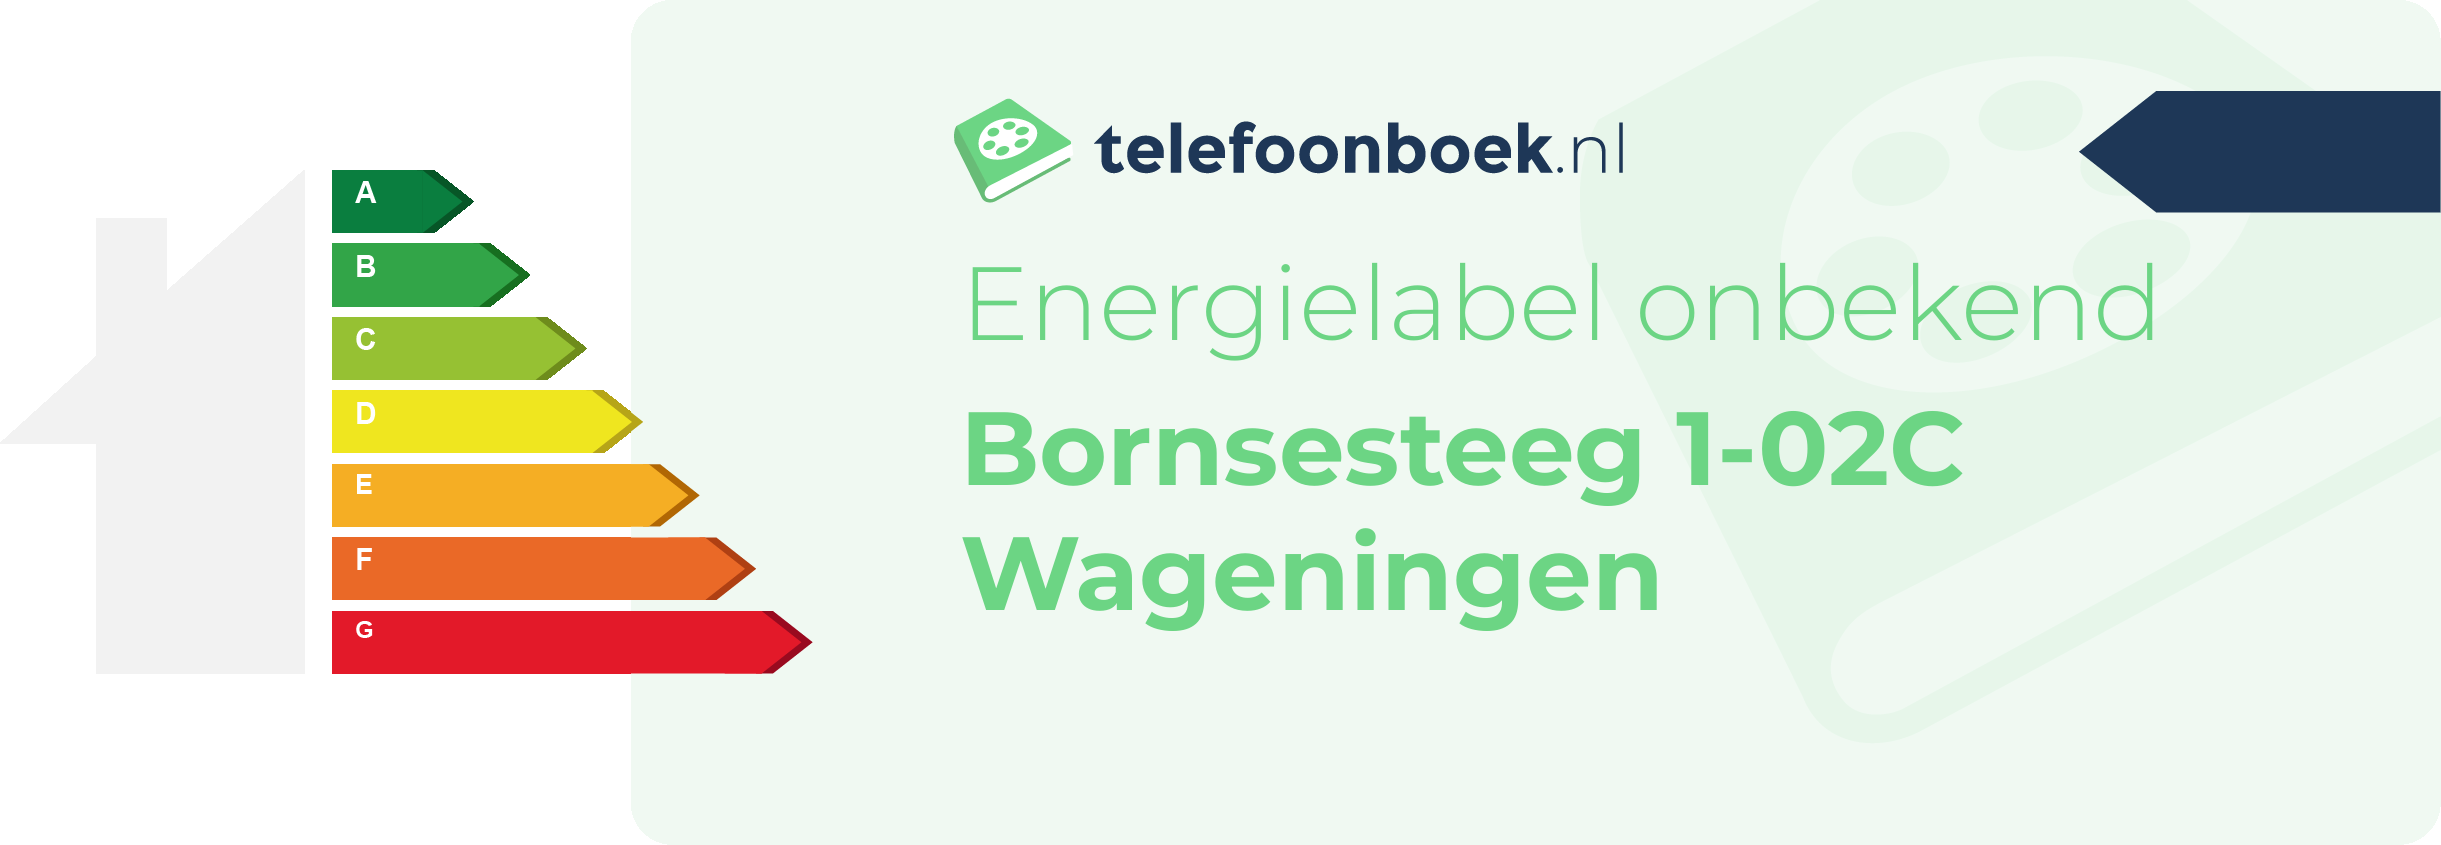 Energielabel Bornsesteeg 1-02C Wageningen